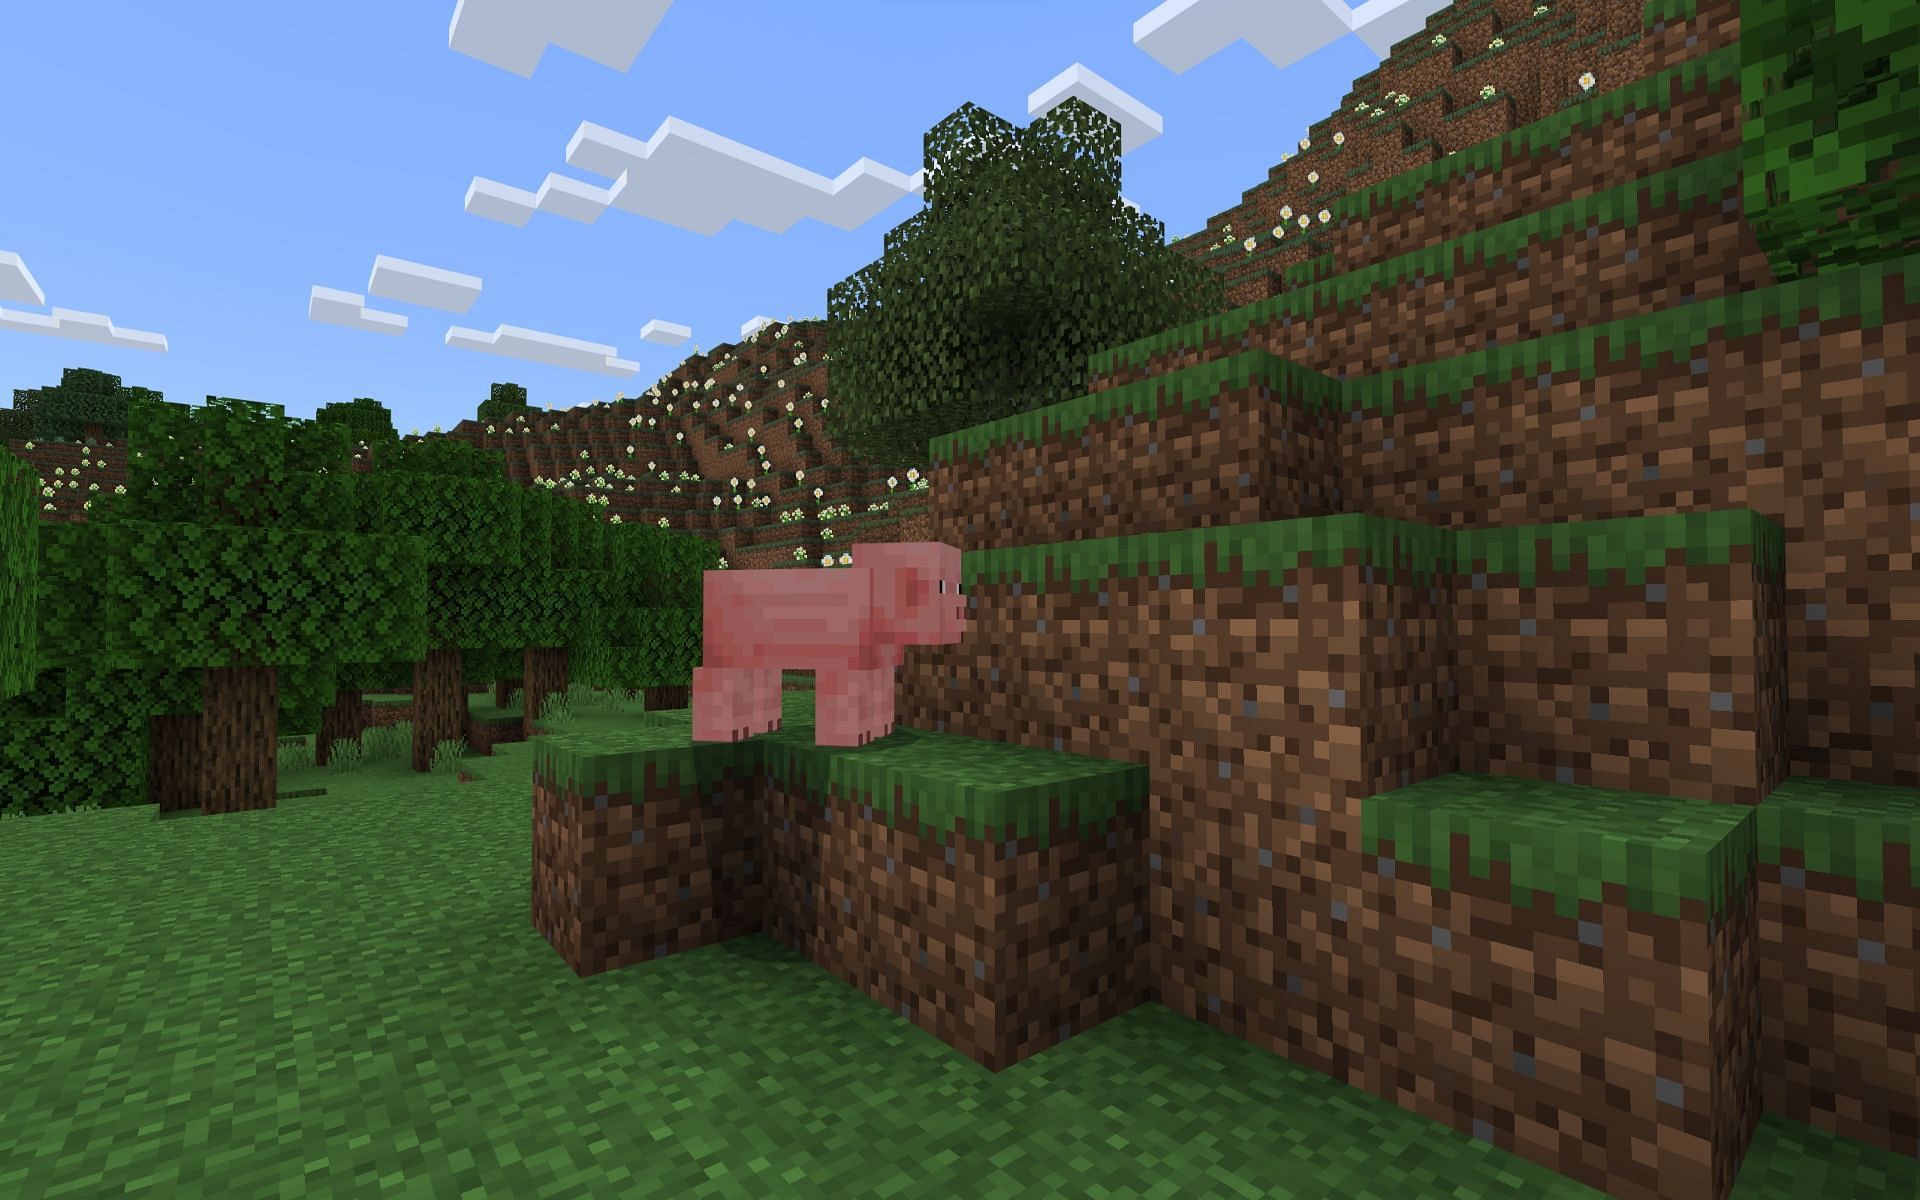 Pig Spawner Anomaly (Image via Mojang)